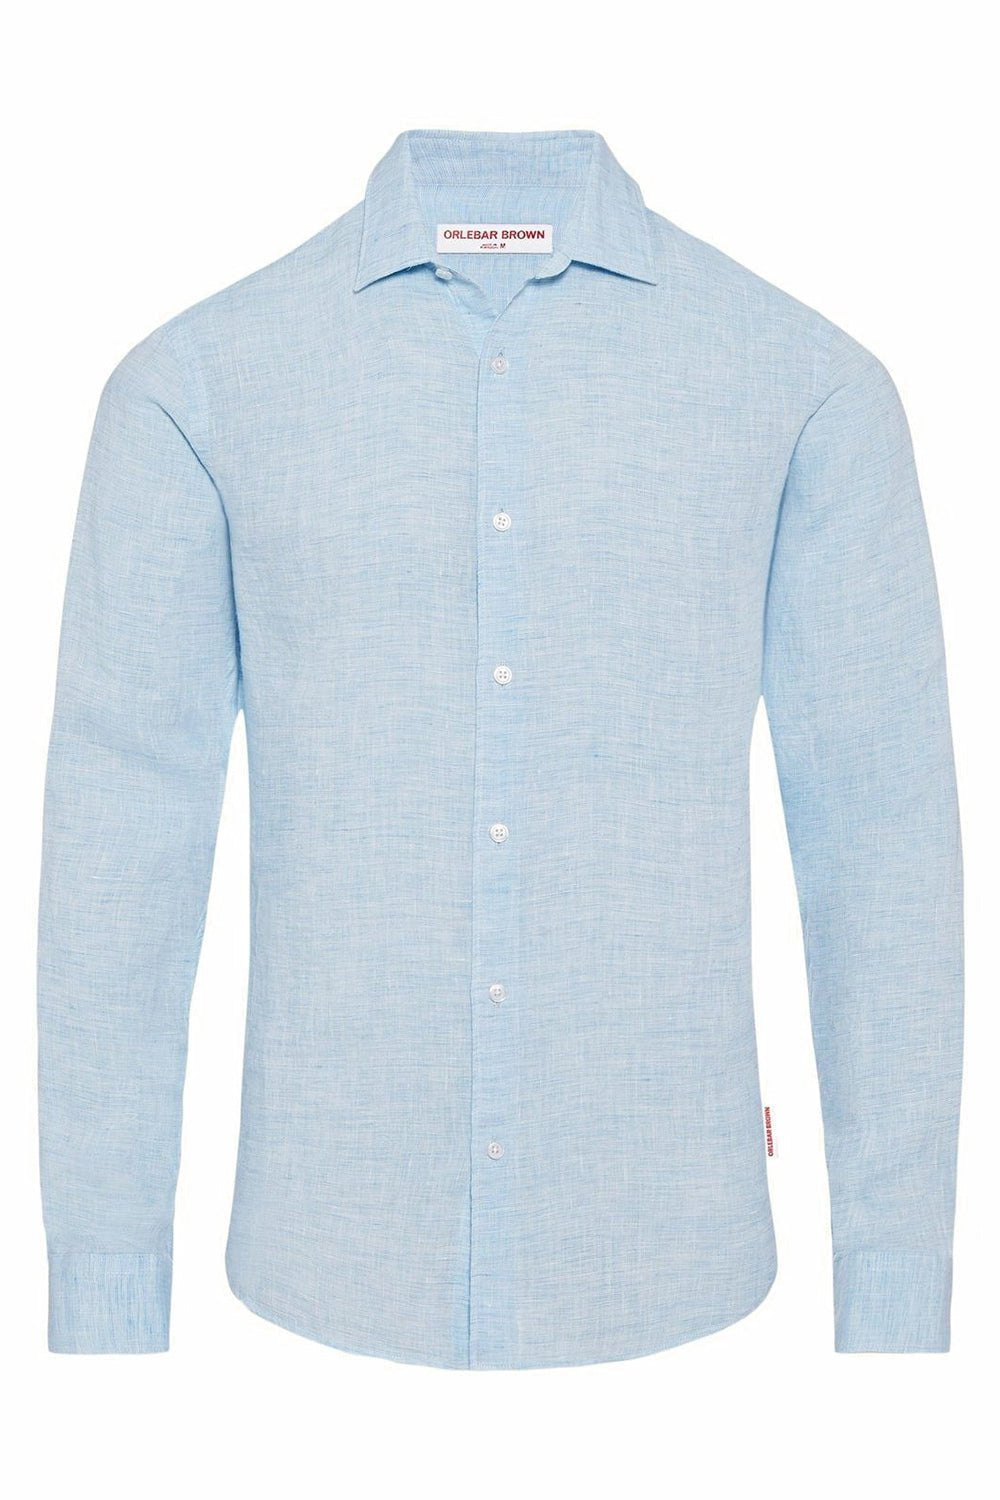 ORLEBAR BROWN-Giles Linen Shirt - Pale Blue-